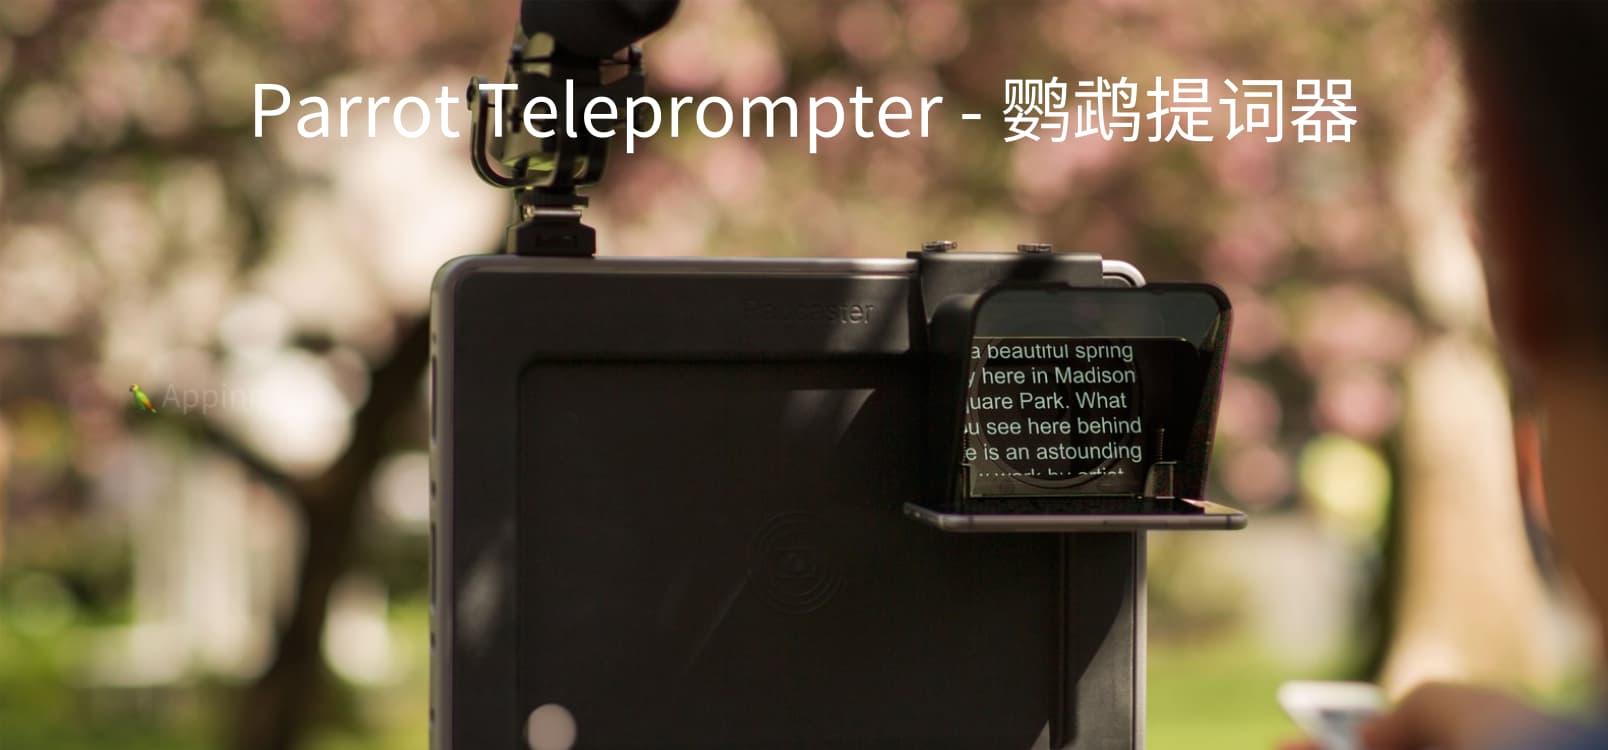 Parrot Teleprompter - 适合于拍摄视频的「提词器」[iPhone/iPad] 1